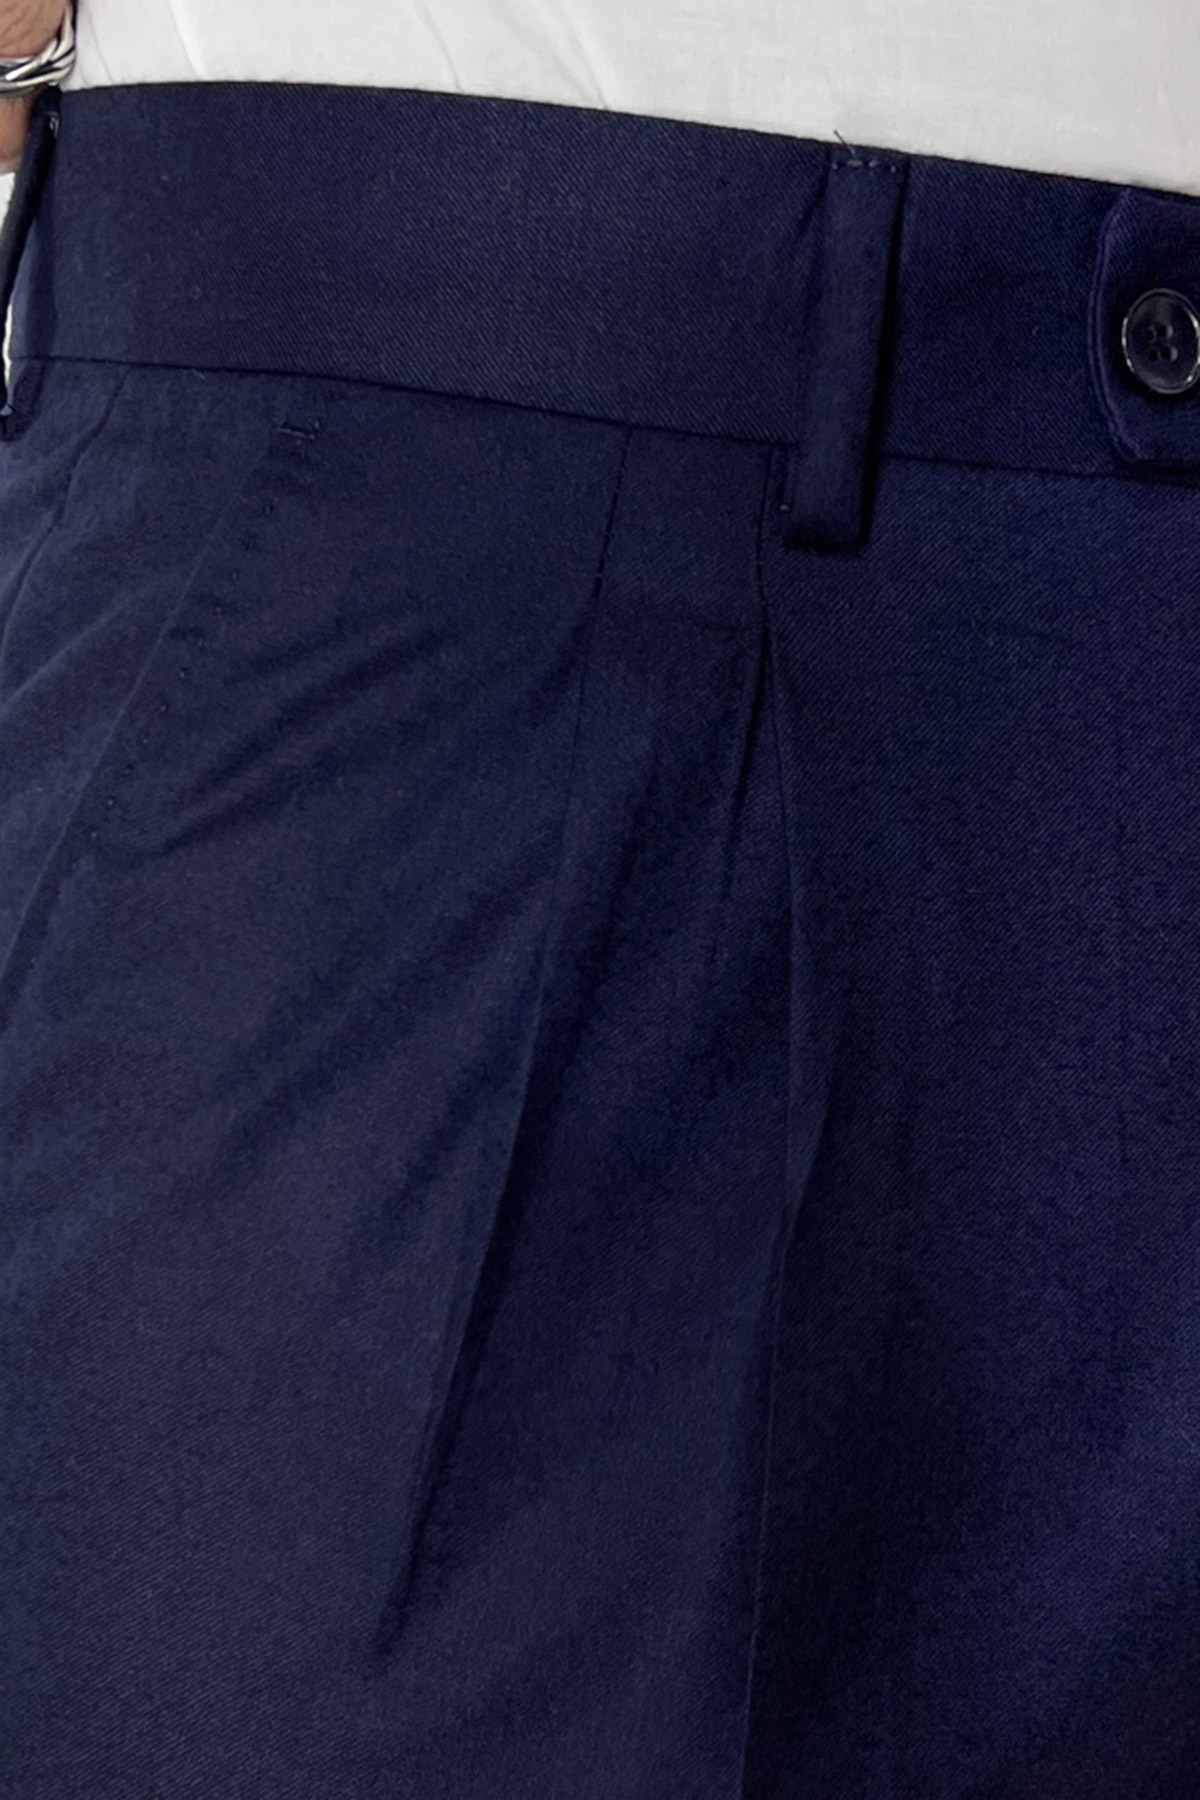 Pantalone uomo navy blu vita alta tasca america in lana flanella con doppia pinces Vitale Barberis Canonico